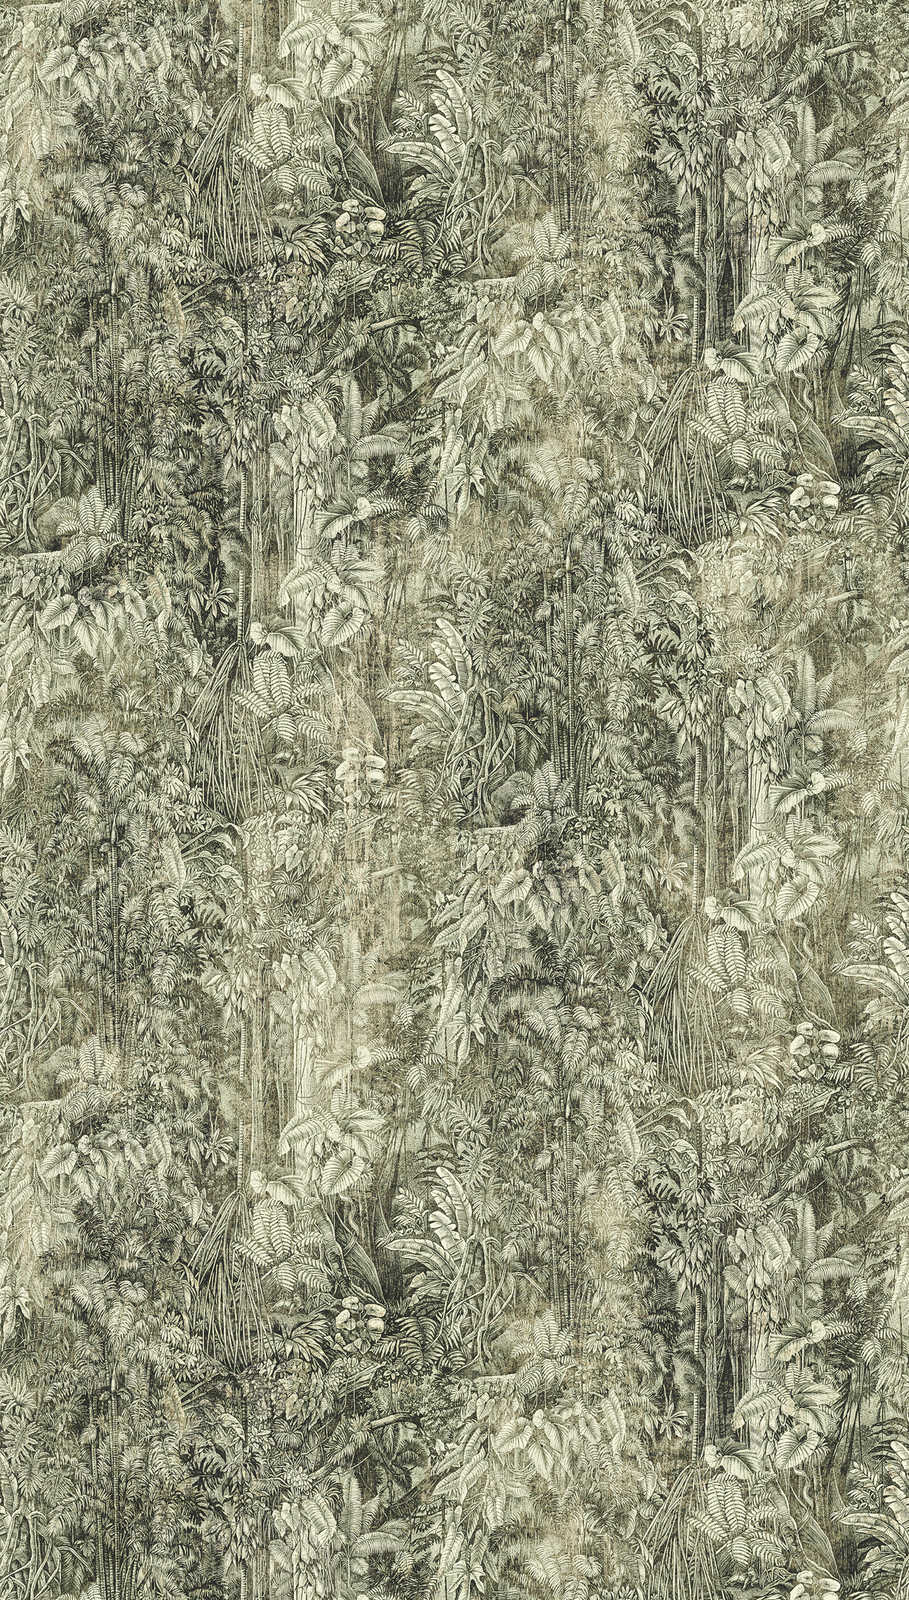             Dschungelmotiv Tapete im Retro Stil – Grün, Grau
        